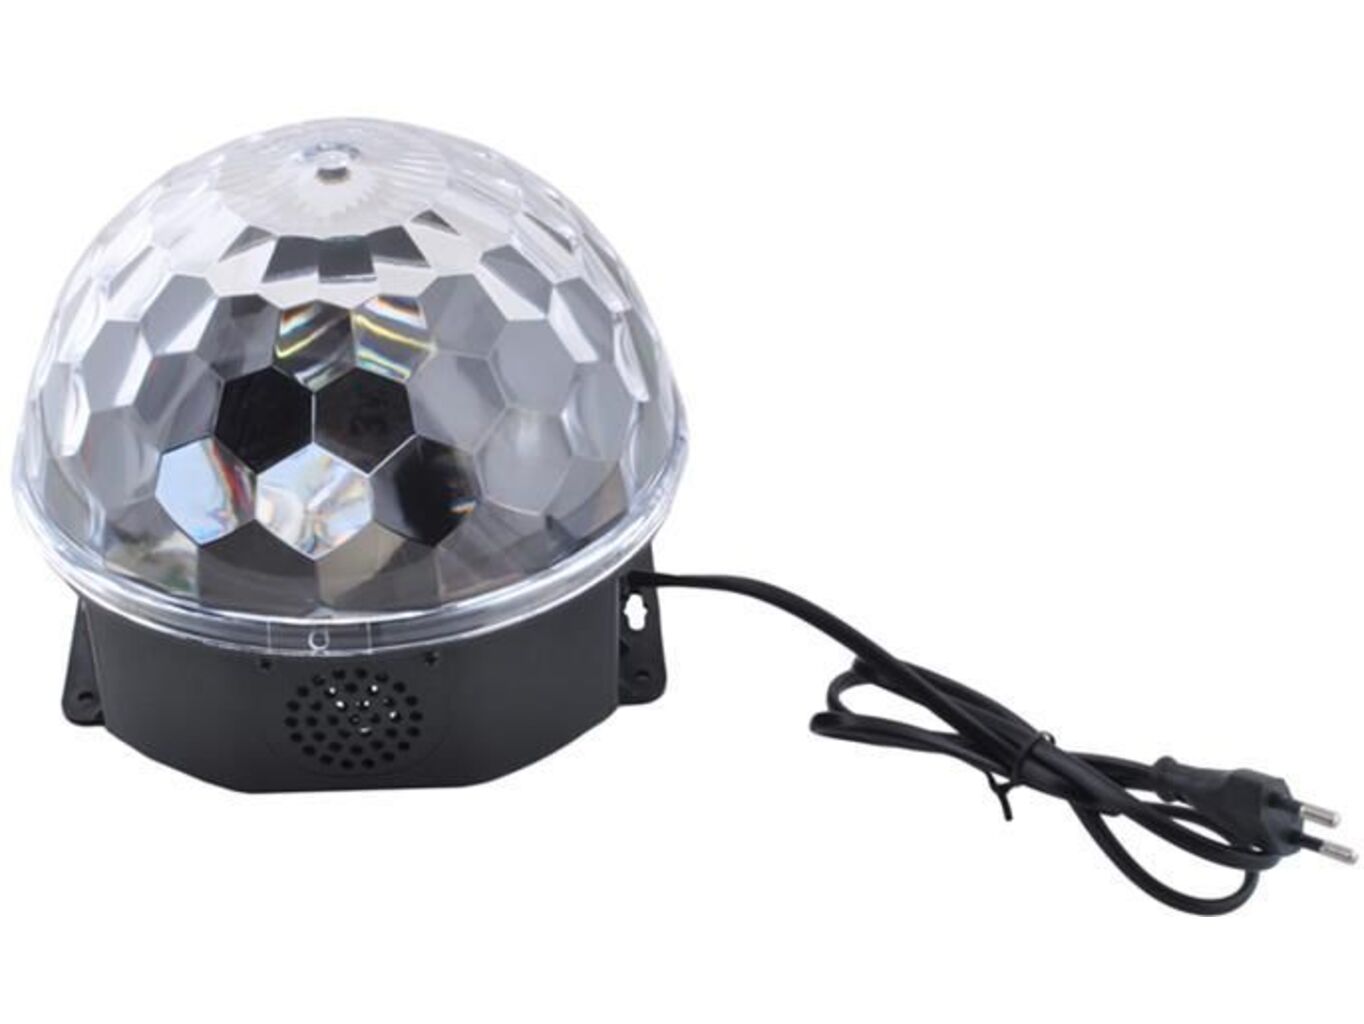 Disco LED koule